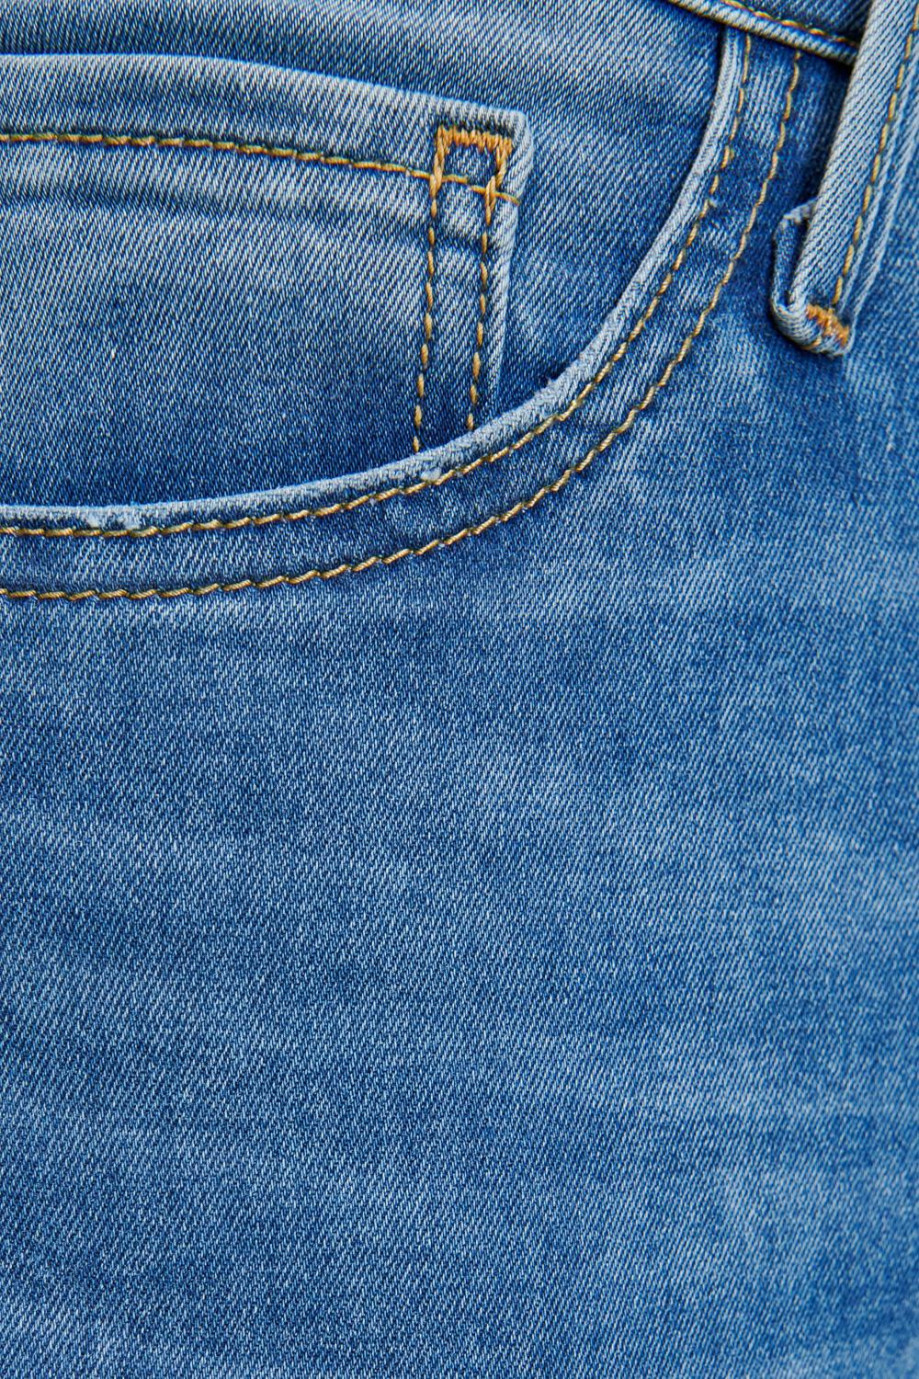 Jean súper skinny tiro bajo azul claro con costuras en contraste